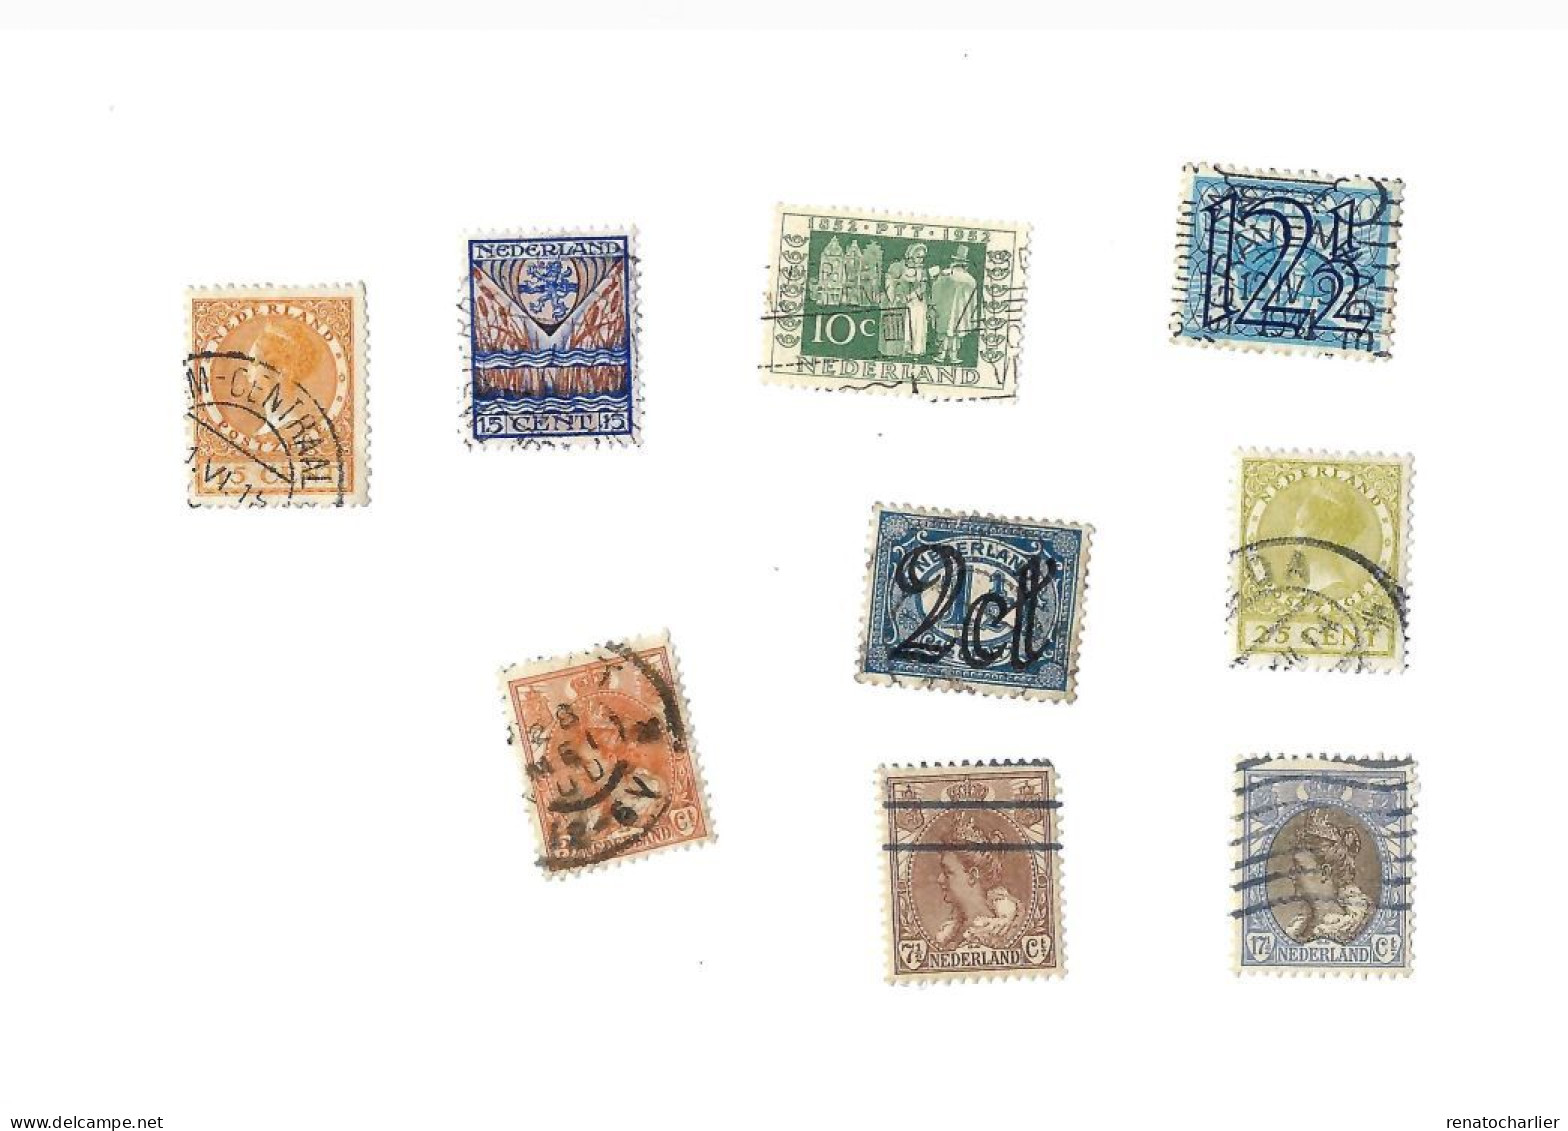 Collection de 155 timbres oblitérés.